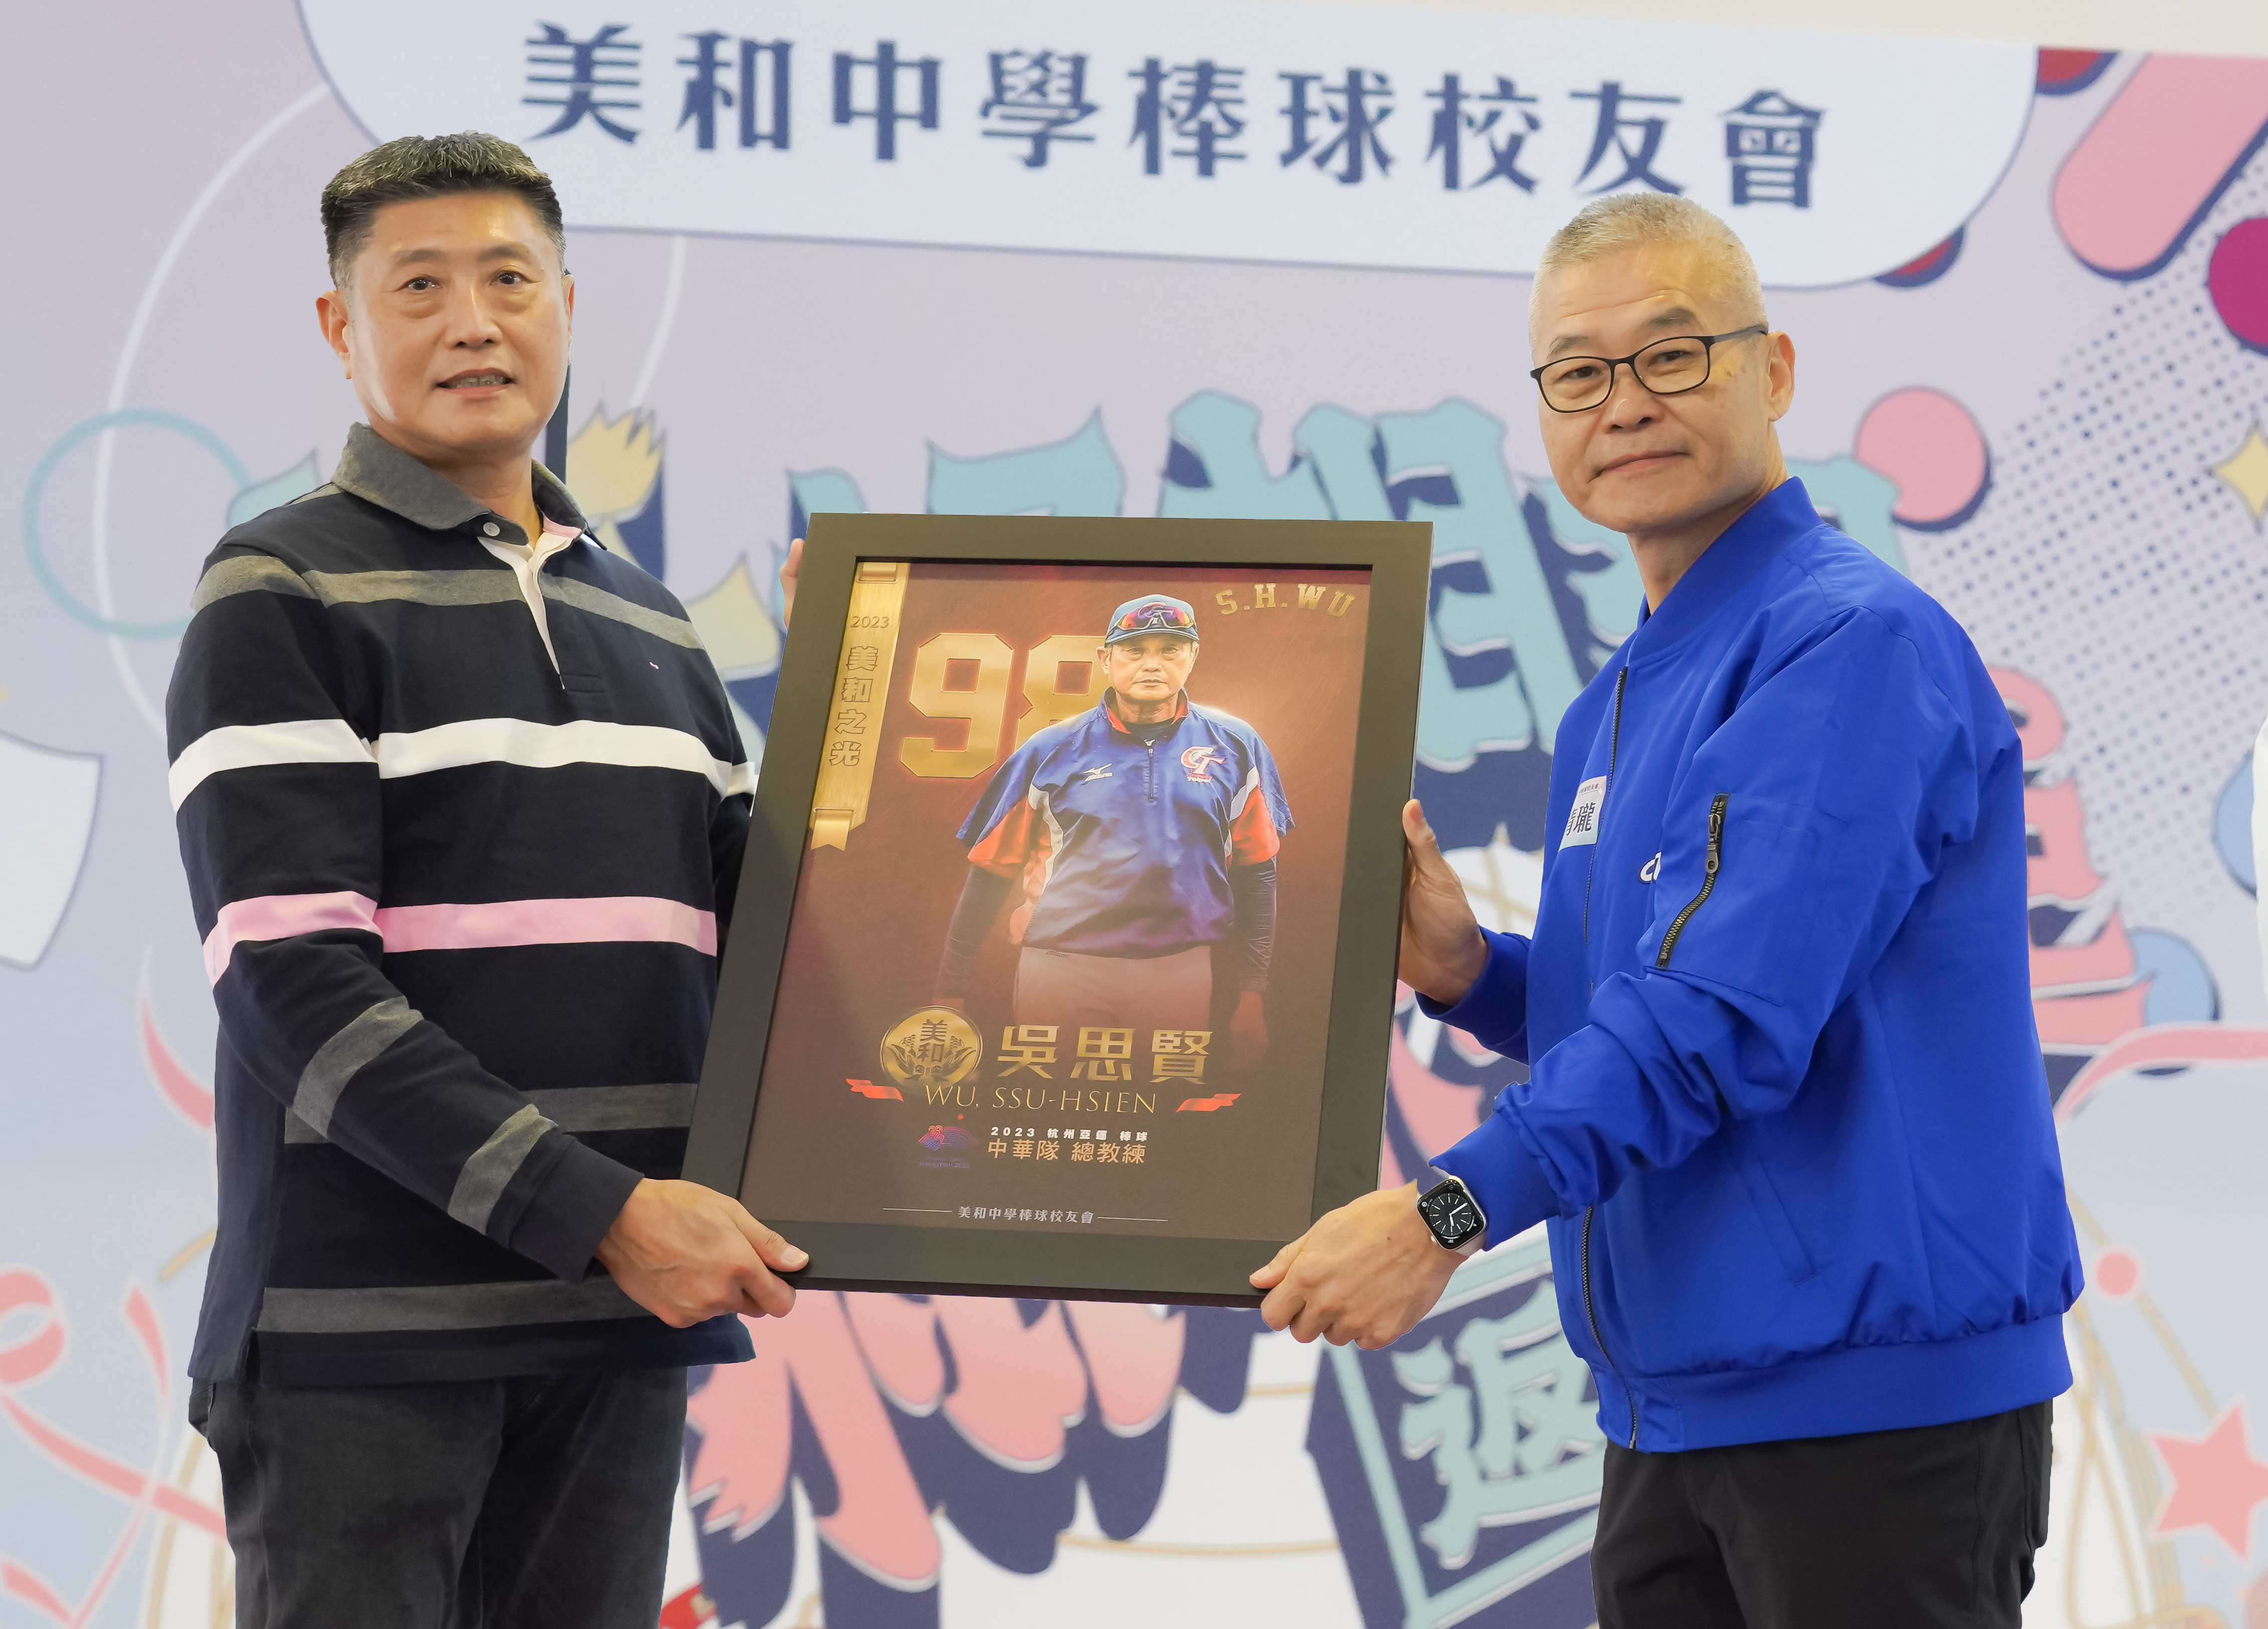 美和棒球校友會會長楊清瓏表揚「美和棒球之光」杭州亞運中華隊總教練吳思賢。美和棒球校友會提供